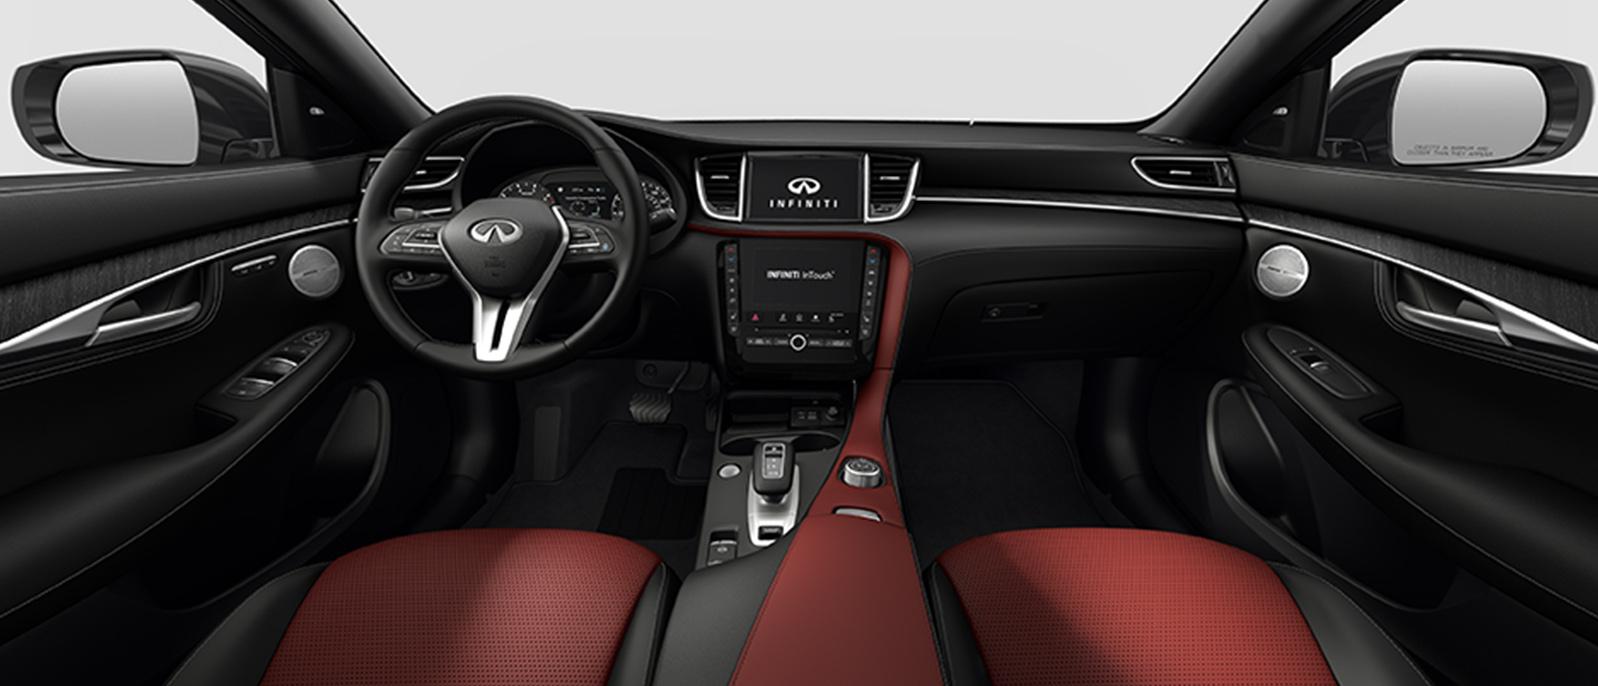 INFINITI QX55 Sensory trim interior in Monaco Red color scheme.